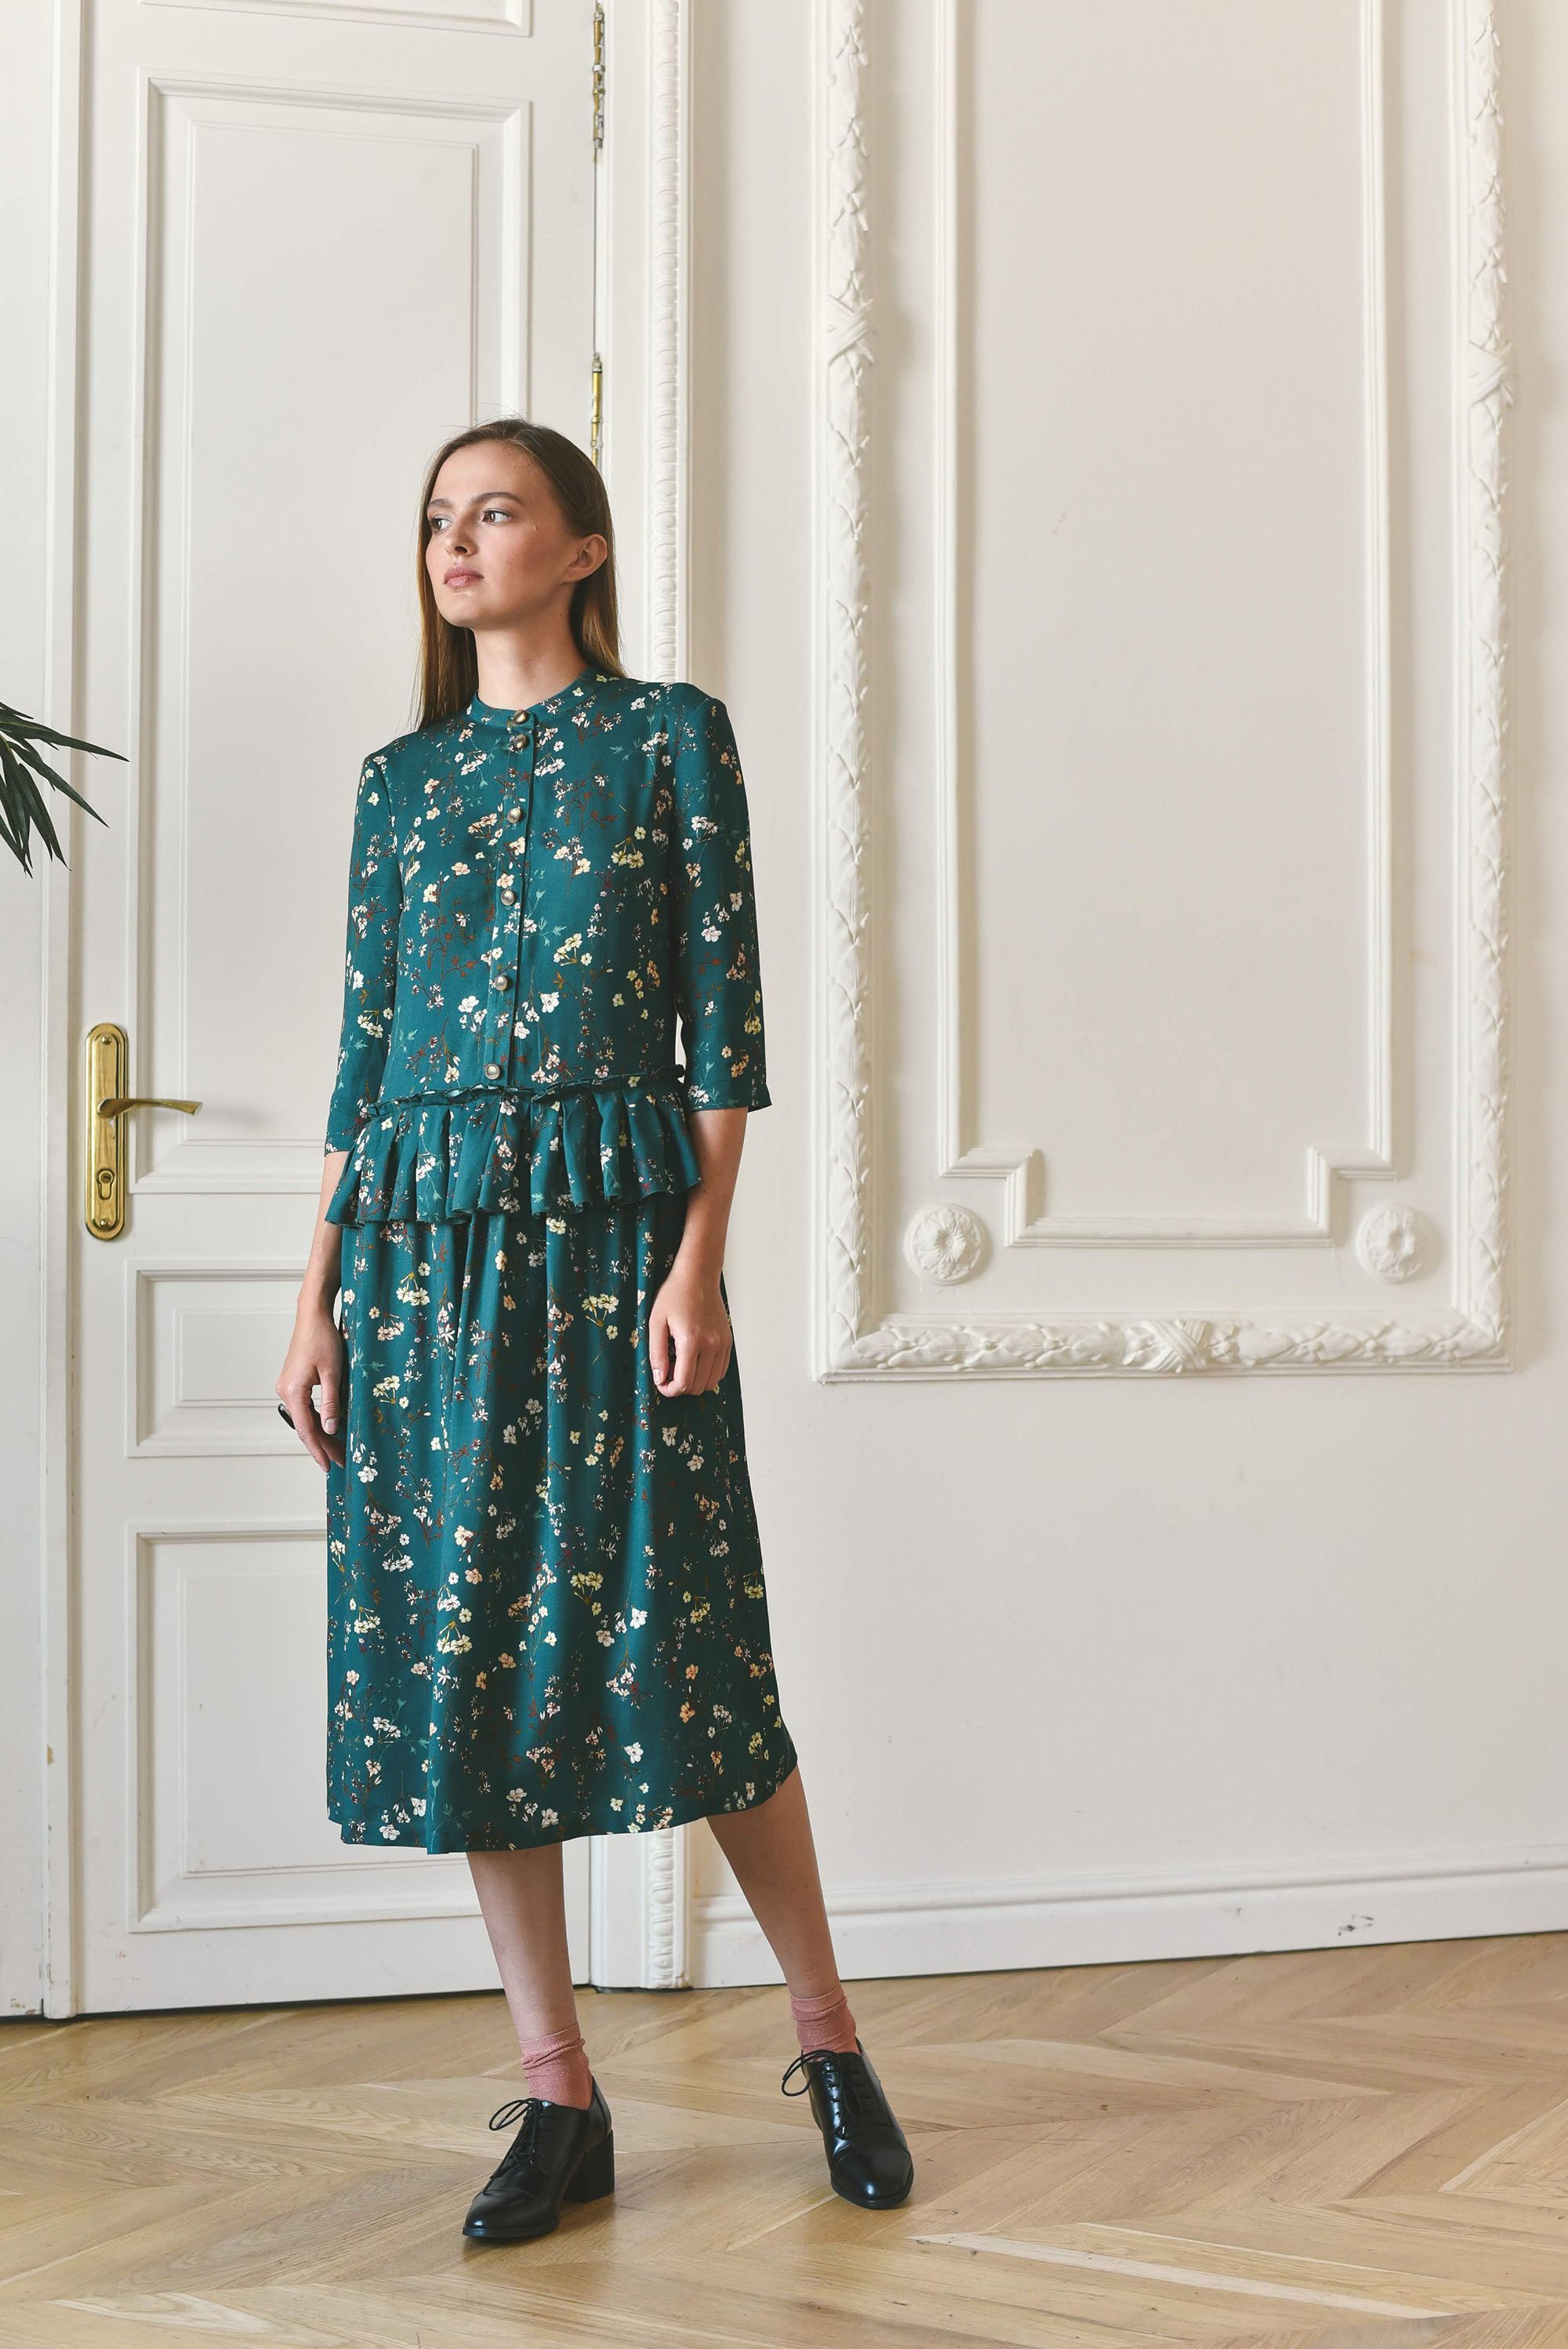 Dress, pattern №627 buy on-line